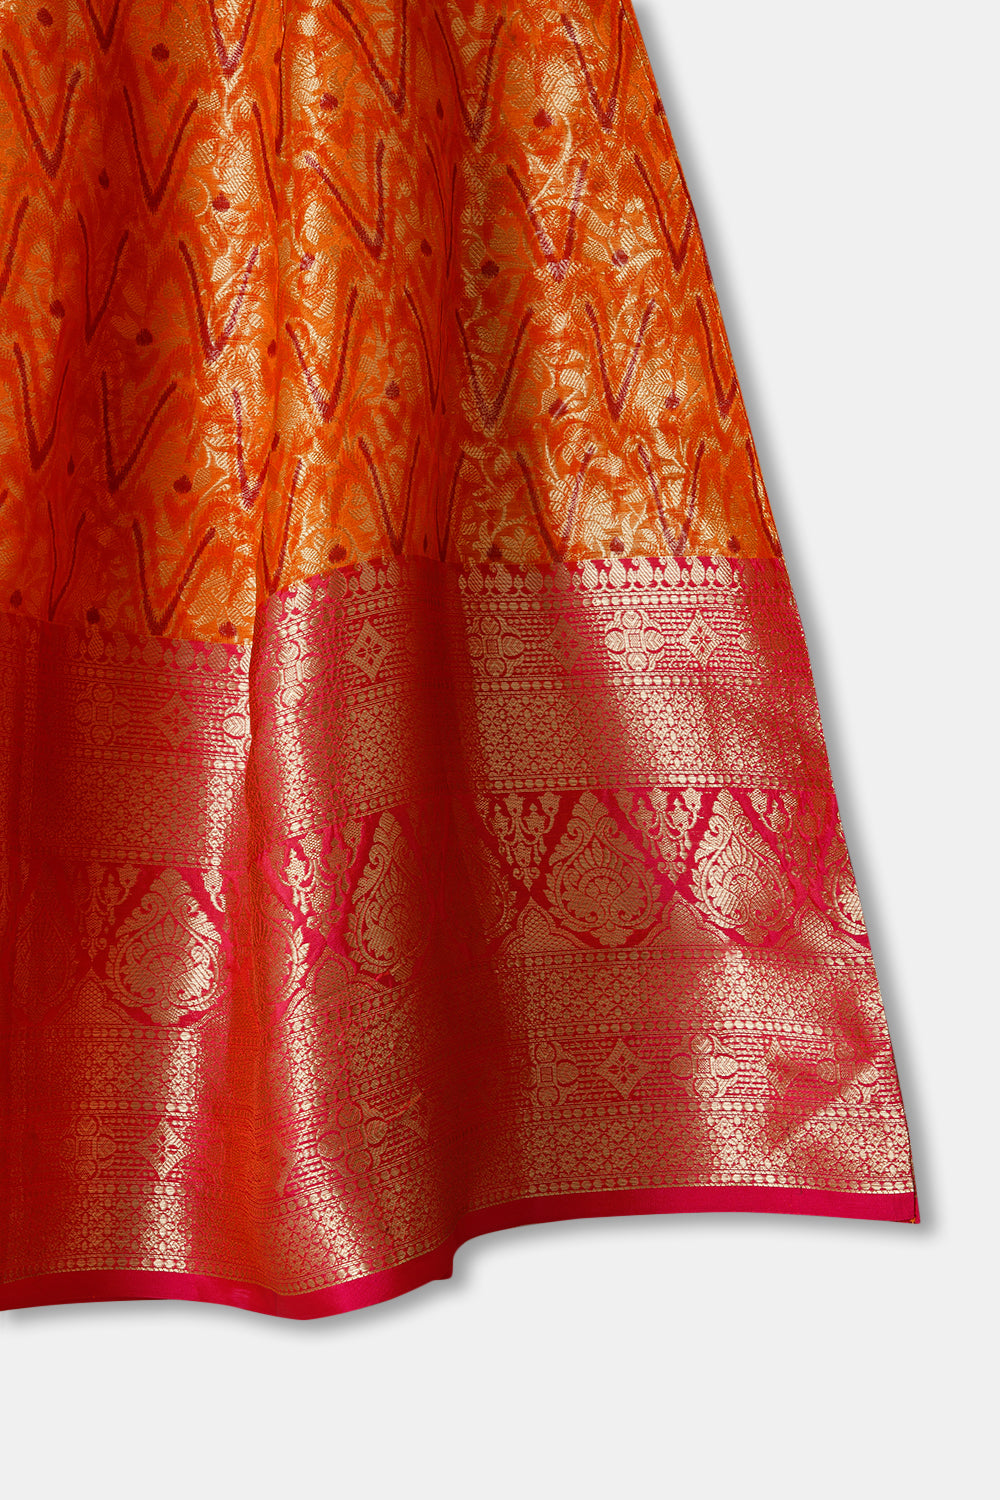 Chittythalli Girls Ethnic wear  Cotton blend  Pavadai Set with  Round Neck Puff Sleeve - Pink - PS36